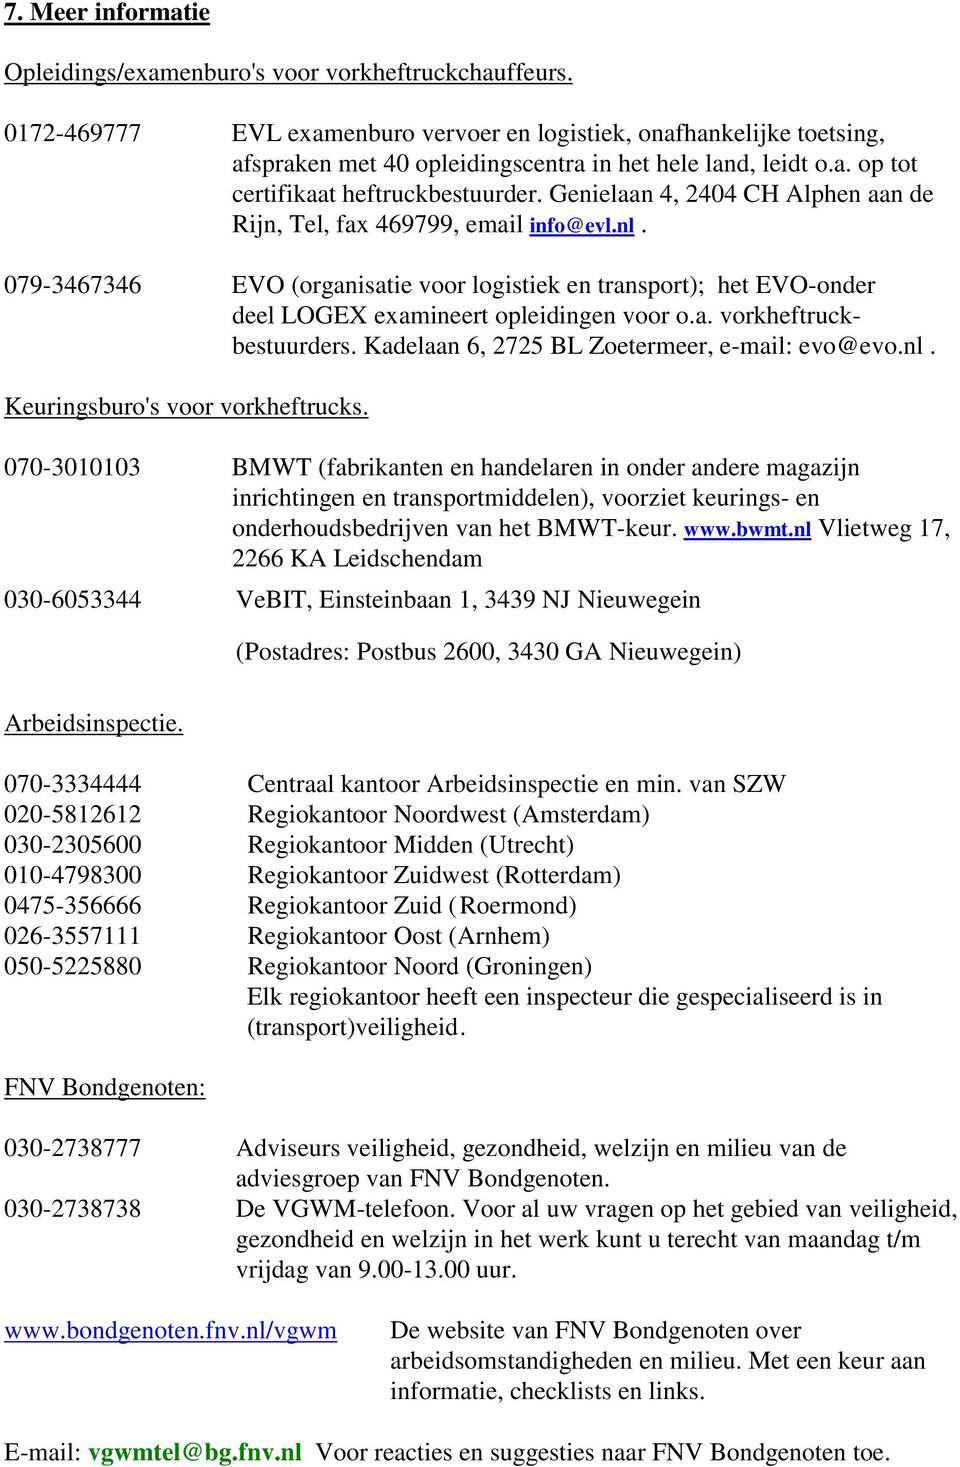 Genielaan 4, 2404 CH Alphen aan de Rijn, Tel, fax 469799, email info@evl.nl. 079-3467346 EVO (organisatie voor logistiek en transport); het EVO-onder deel LOGEX examineert opleidingen voor o.a. vorkheftruckbestuurders.